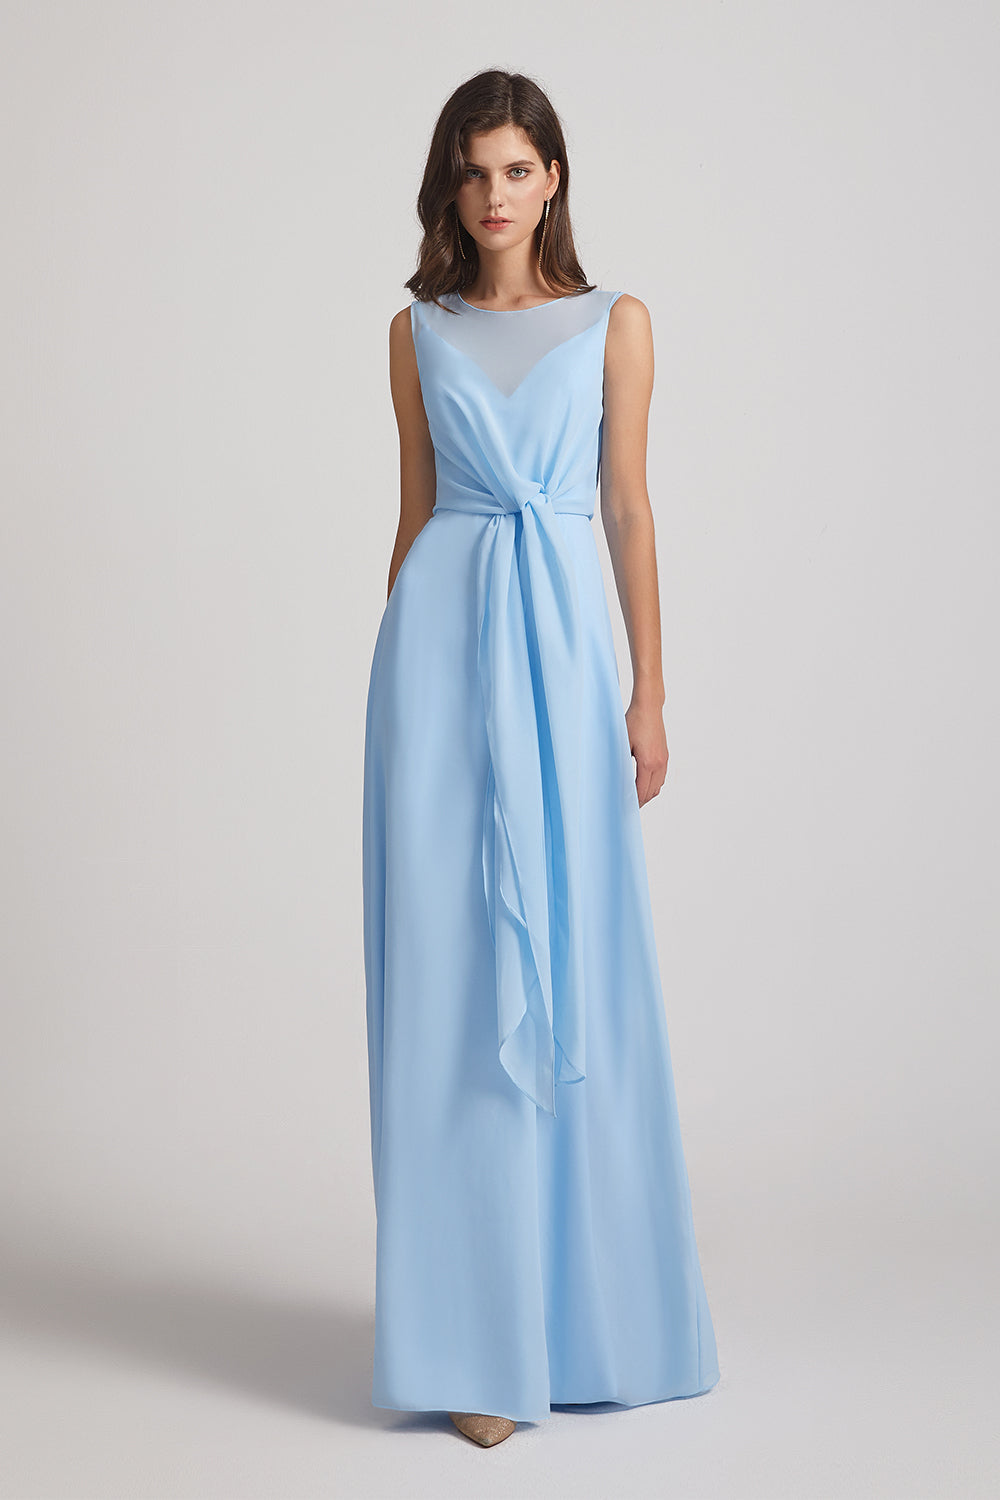 tie-waist chiffon bridesmaid gown